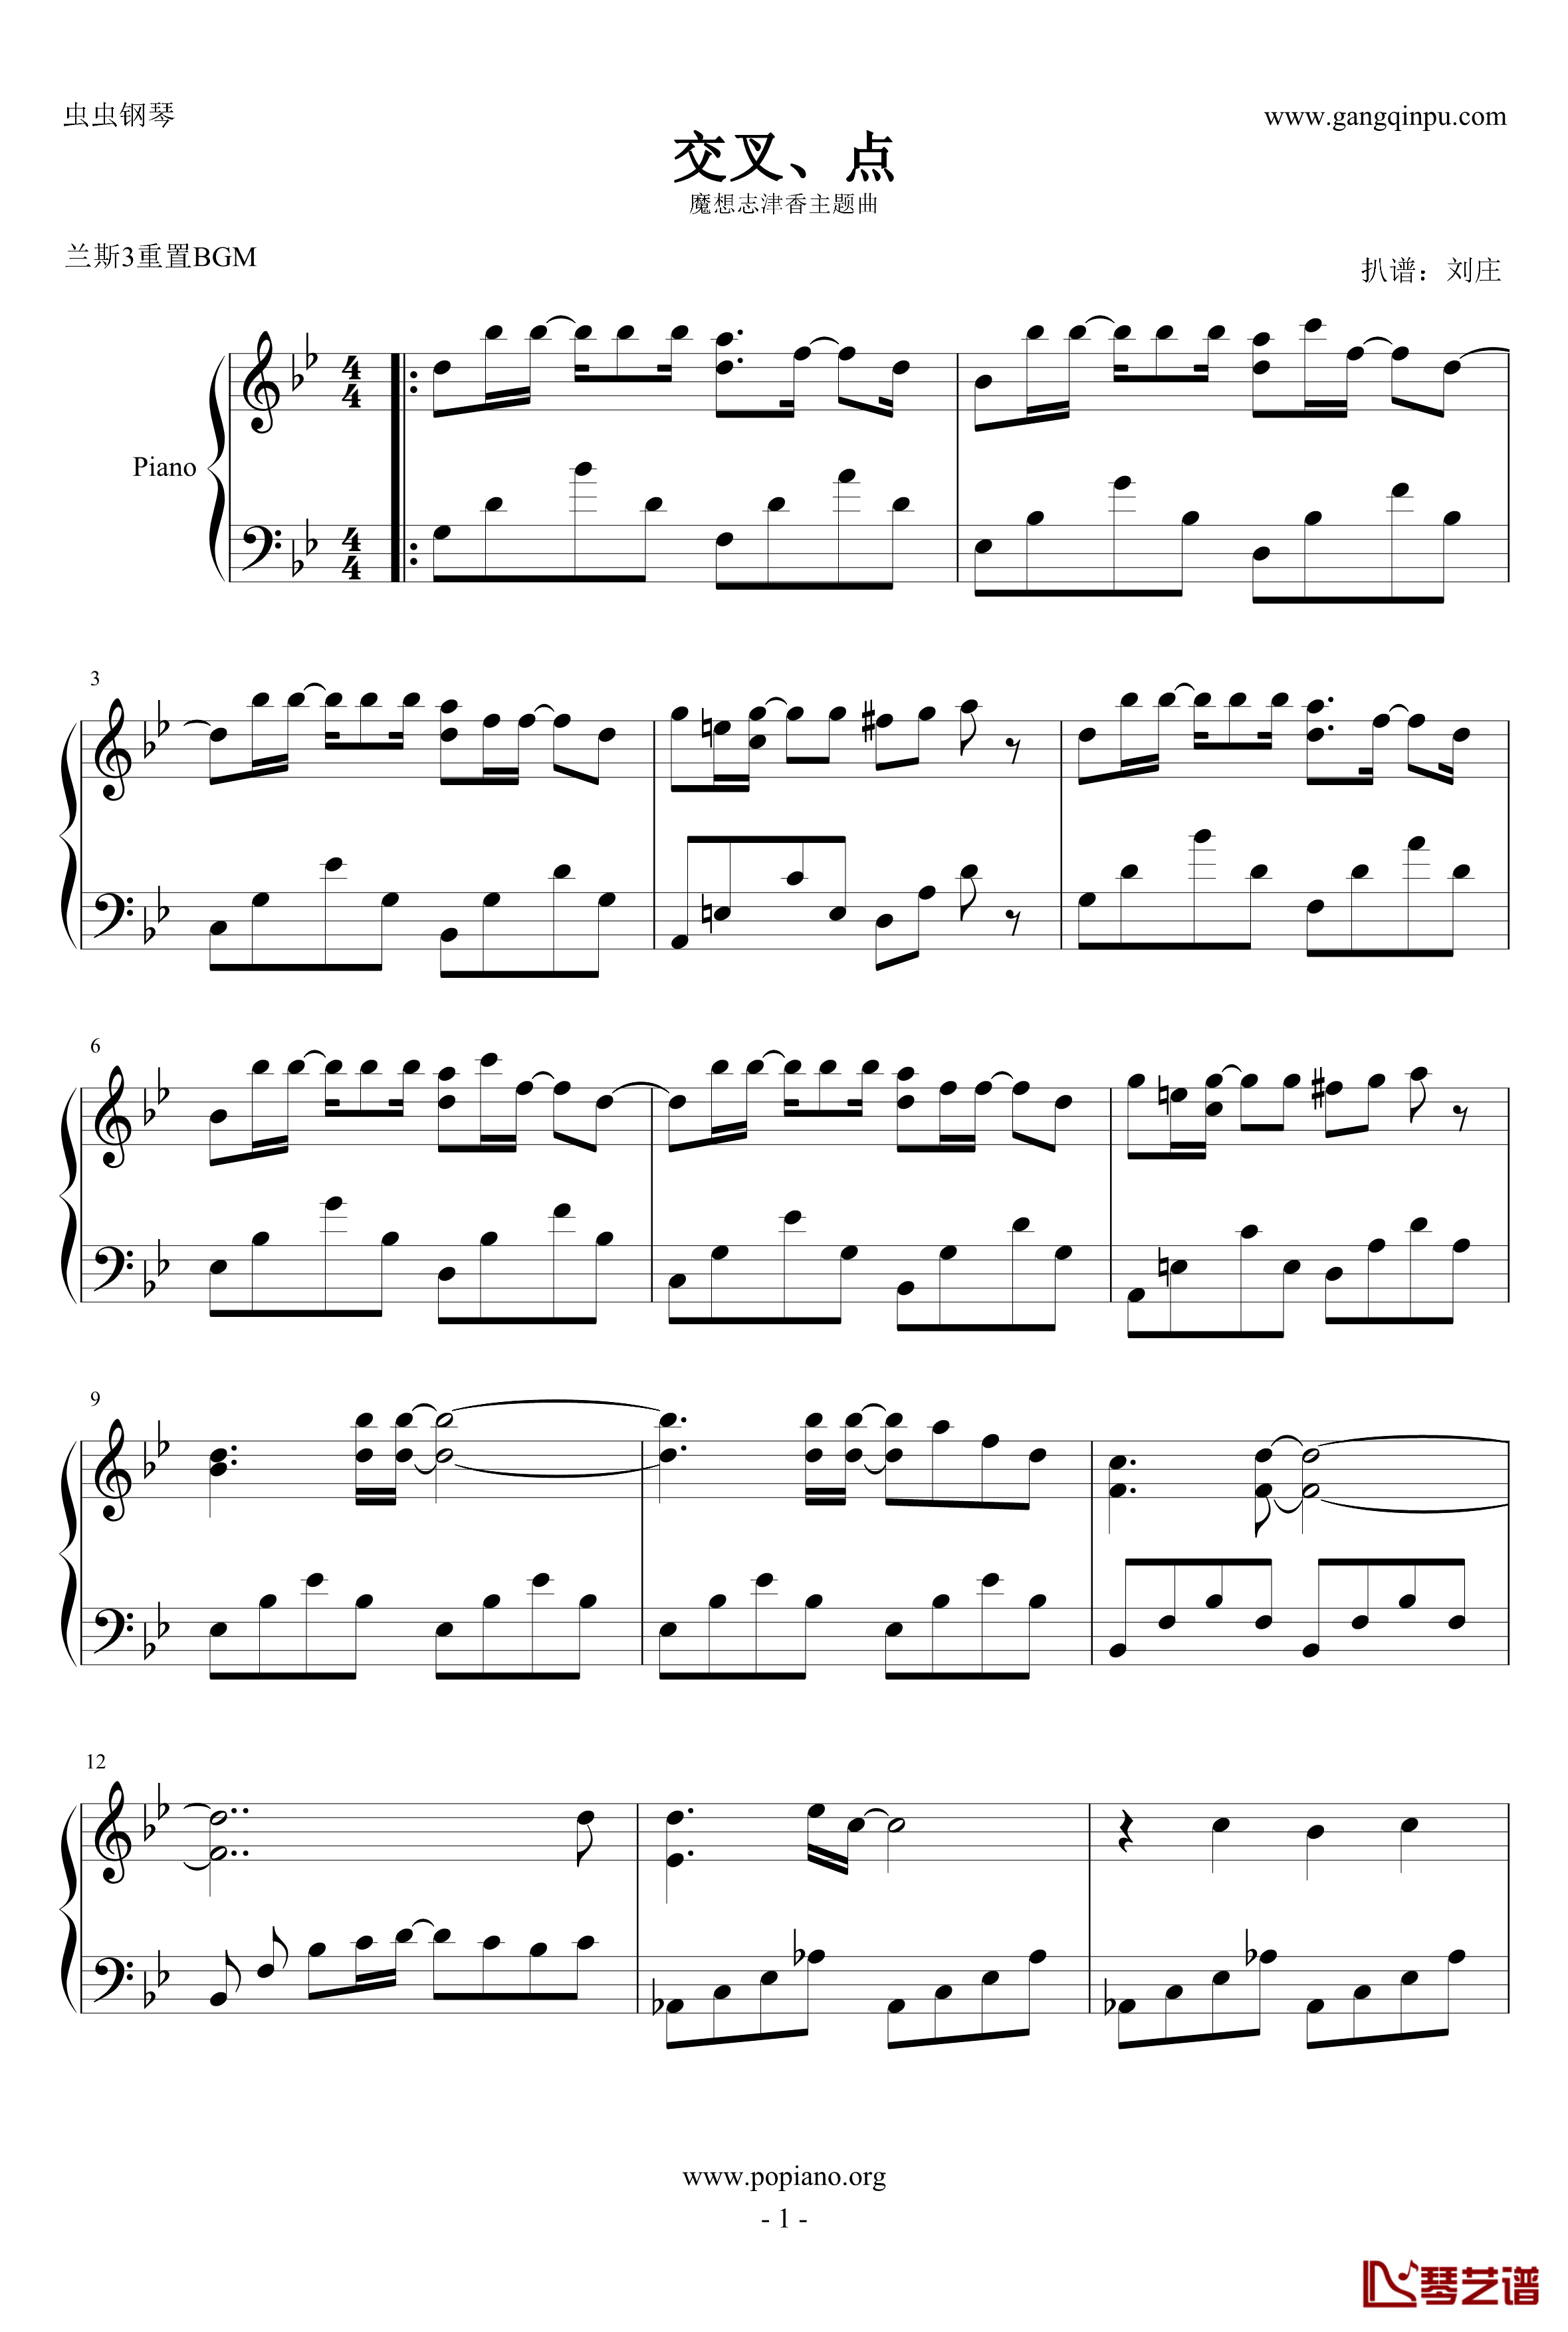 魔想志津香主题曲钢琴谱 - 交叉、点-兰斯31